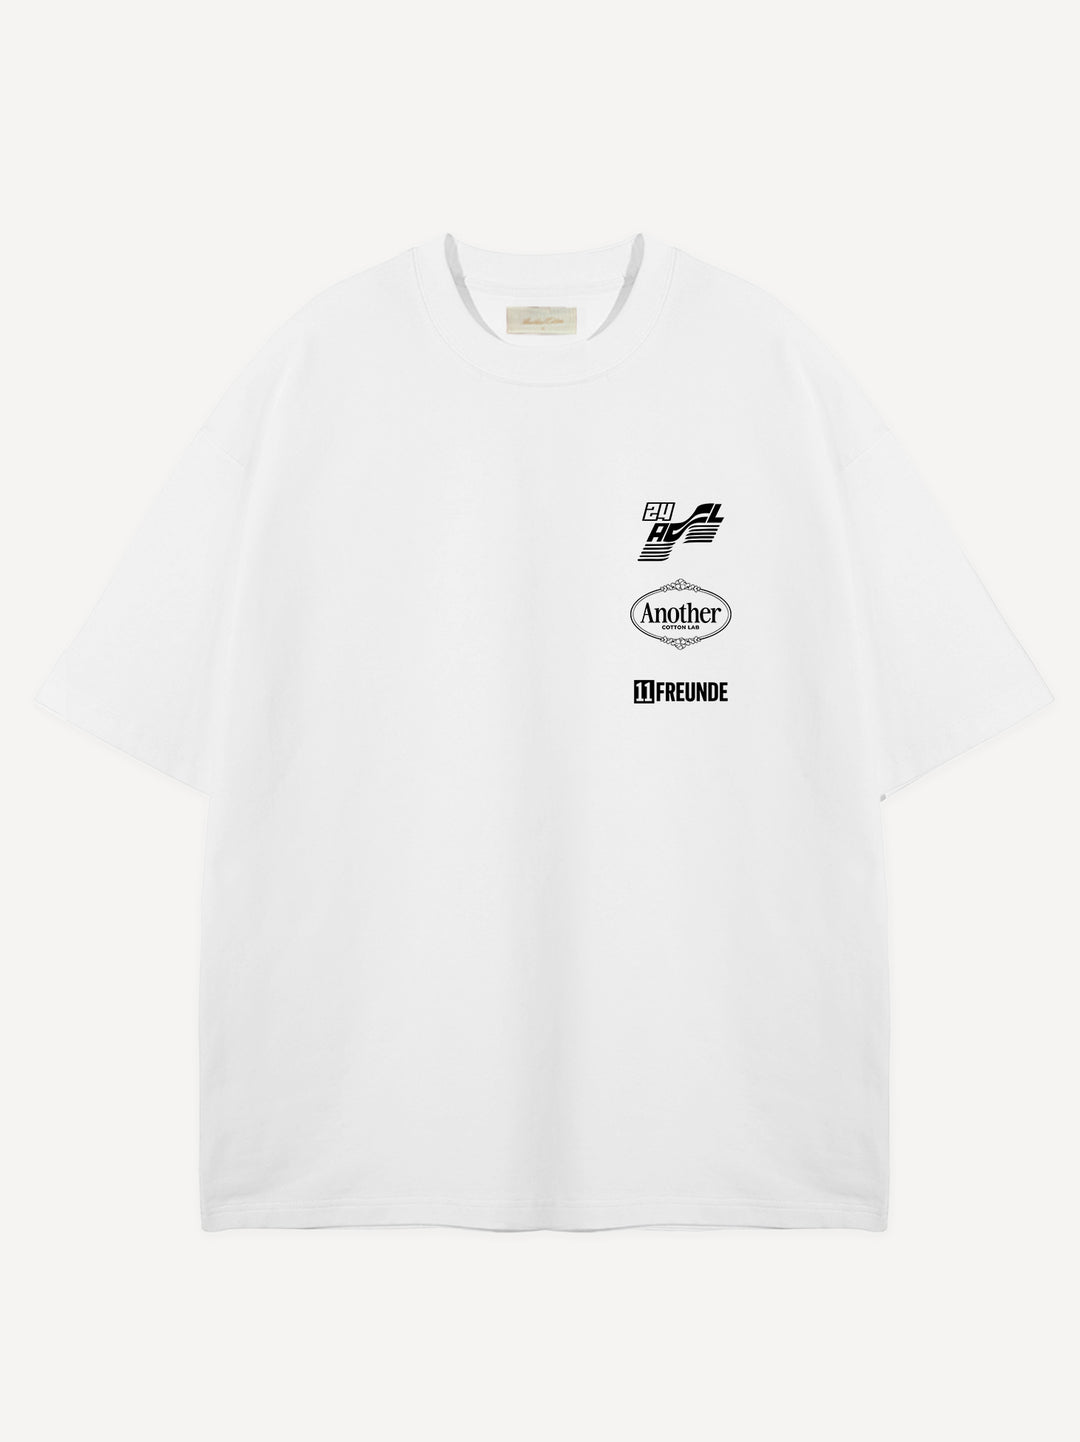 One Dream X 11FREUNDE Oversize T-Shirt